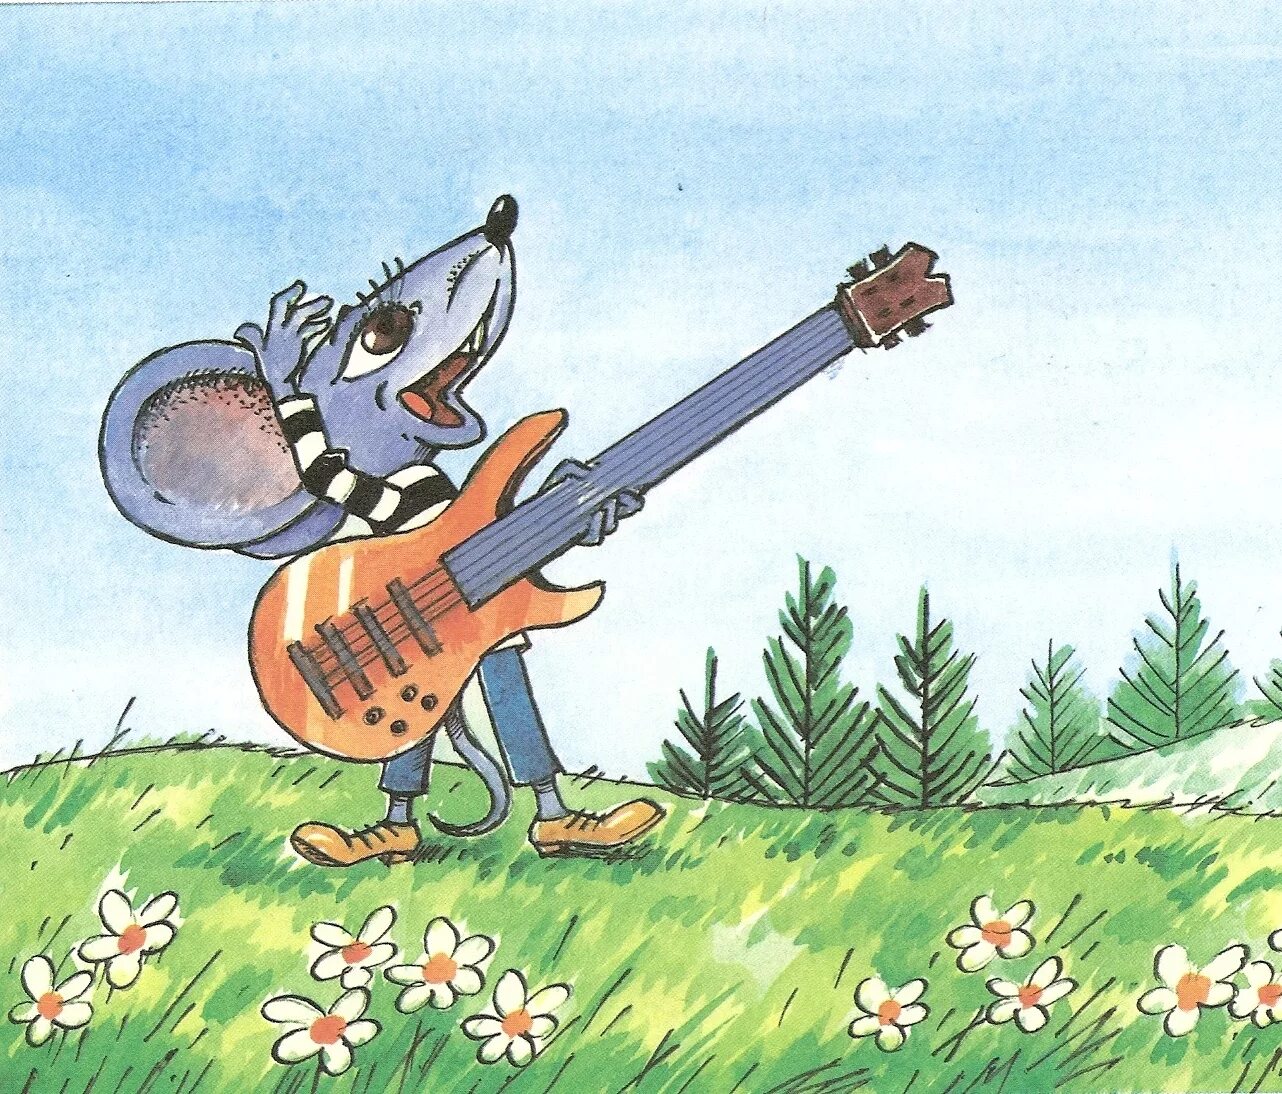 Песенка мышонка. М/Ф песенка мышонка. Мышонок с гитарой. Какой чудесный день чтобы подарить цветов